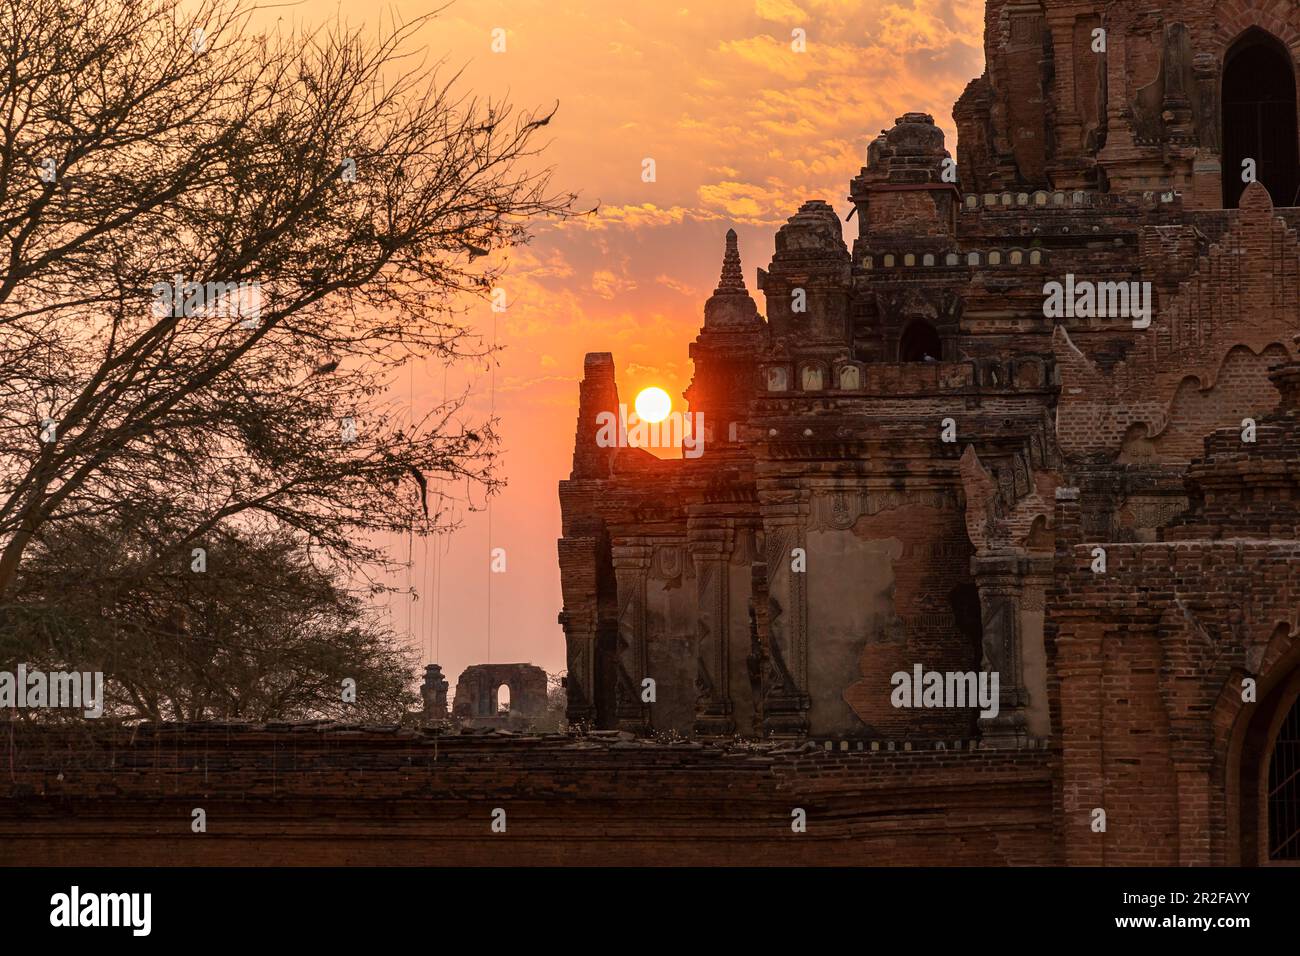 Temple at sunset near Minnanthu village, Bagan, Myanmar Stock Photo